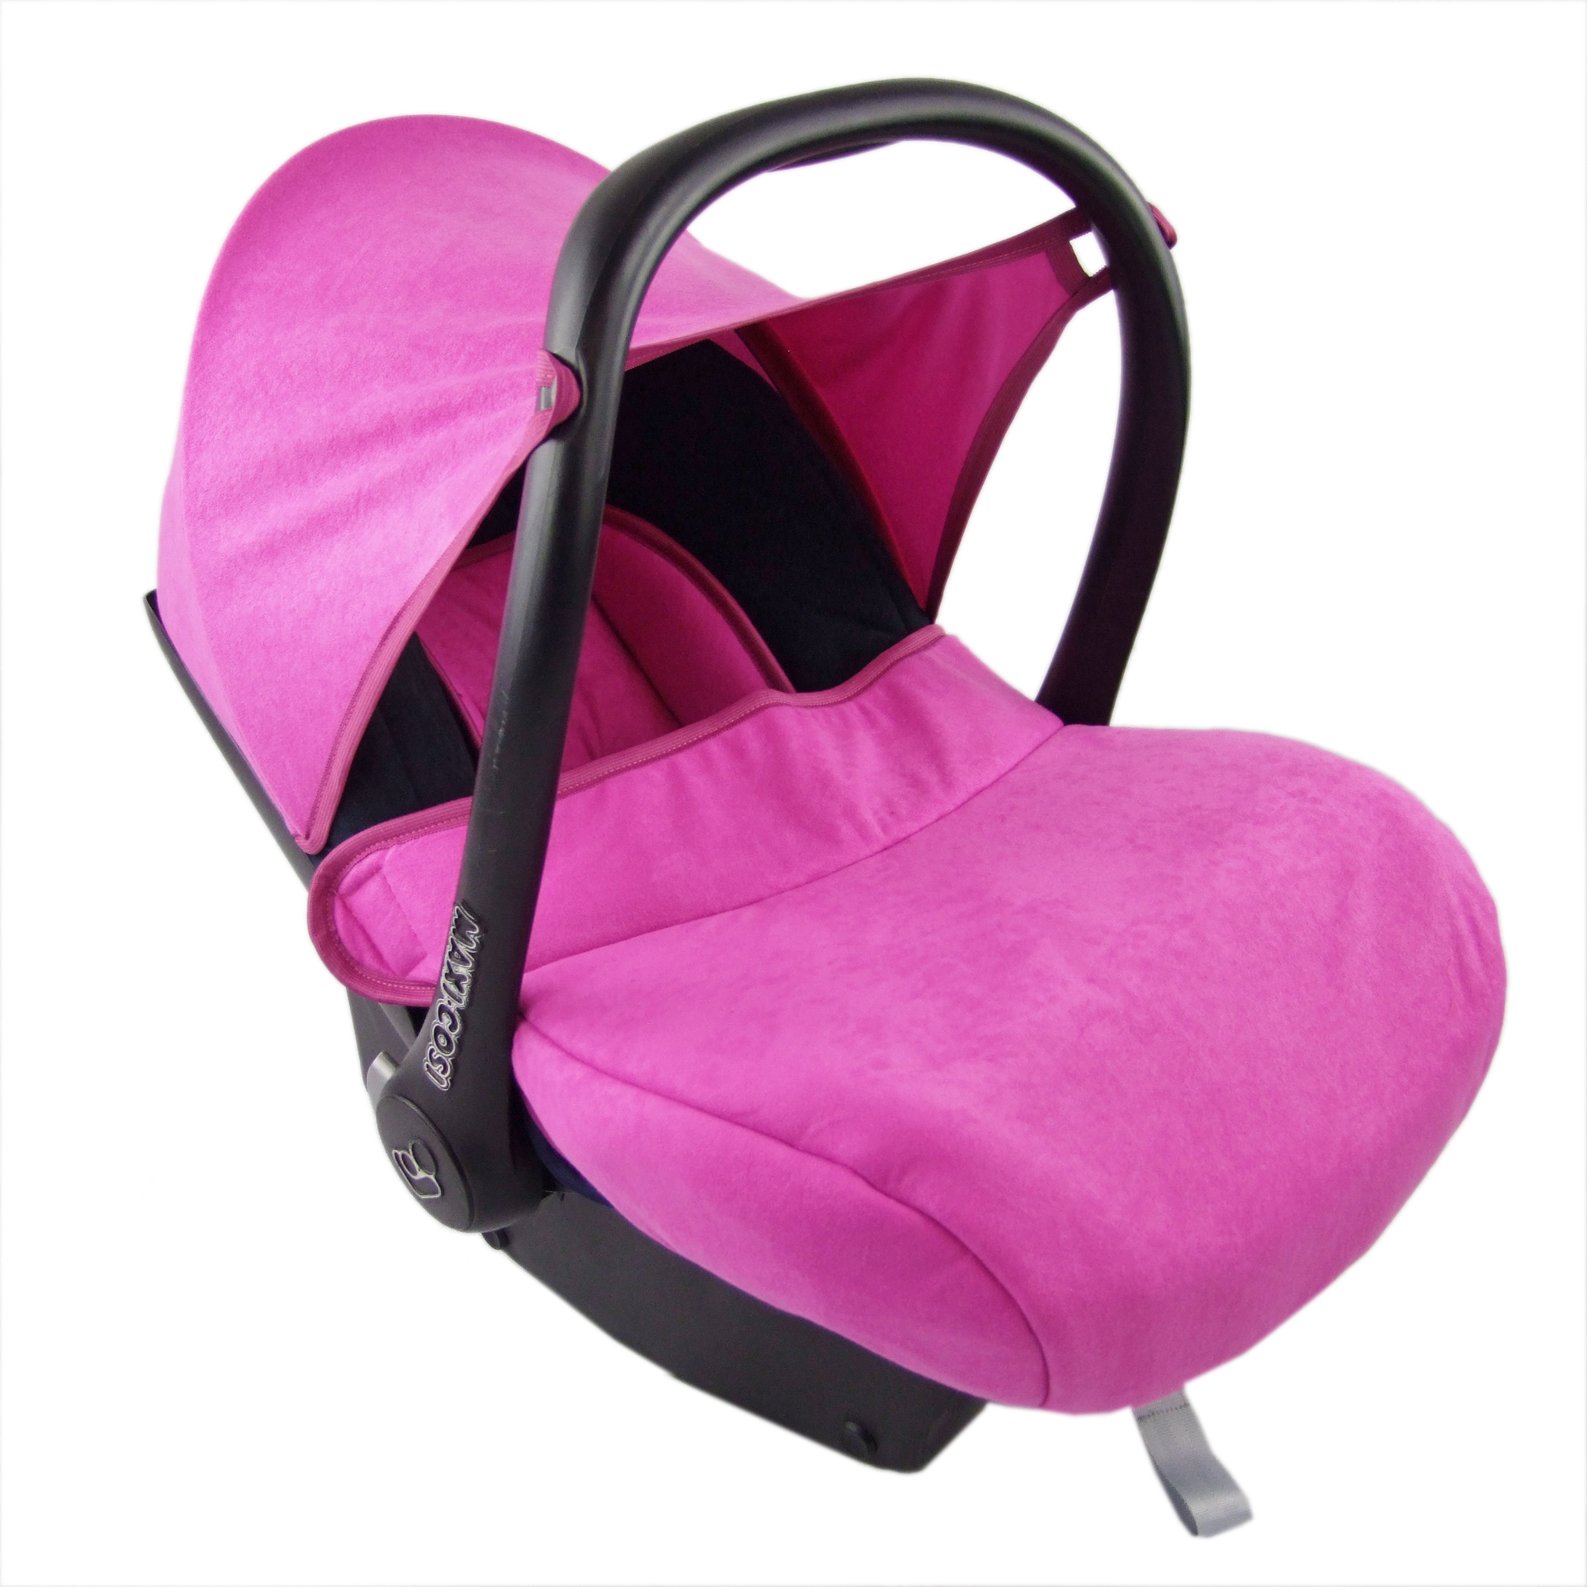 BAMBINIWELT Bezug Ersatzbezug kompatibel mit Maxi-Cosi CabrioFix für Babyschale 7-tlg Komplett-Set (schwarz-pink)